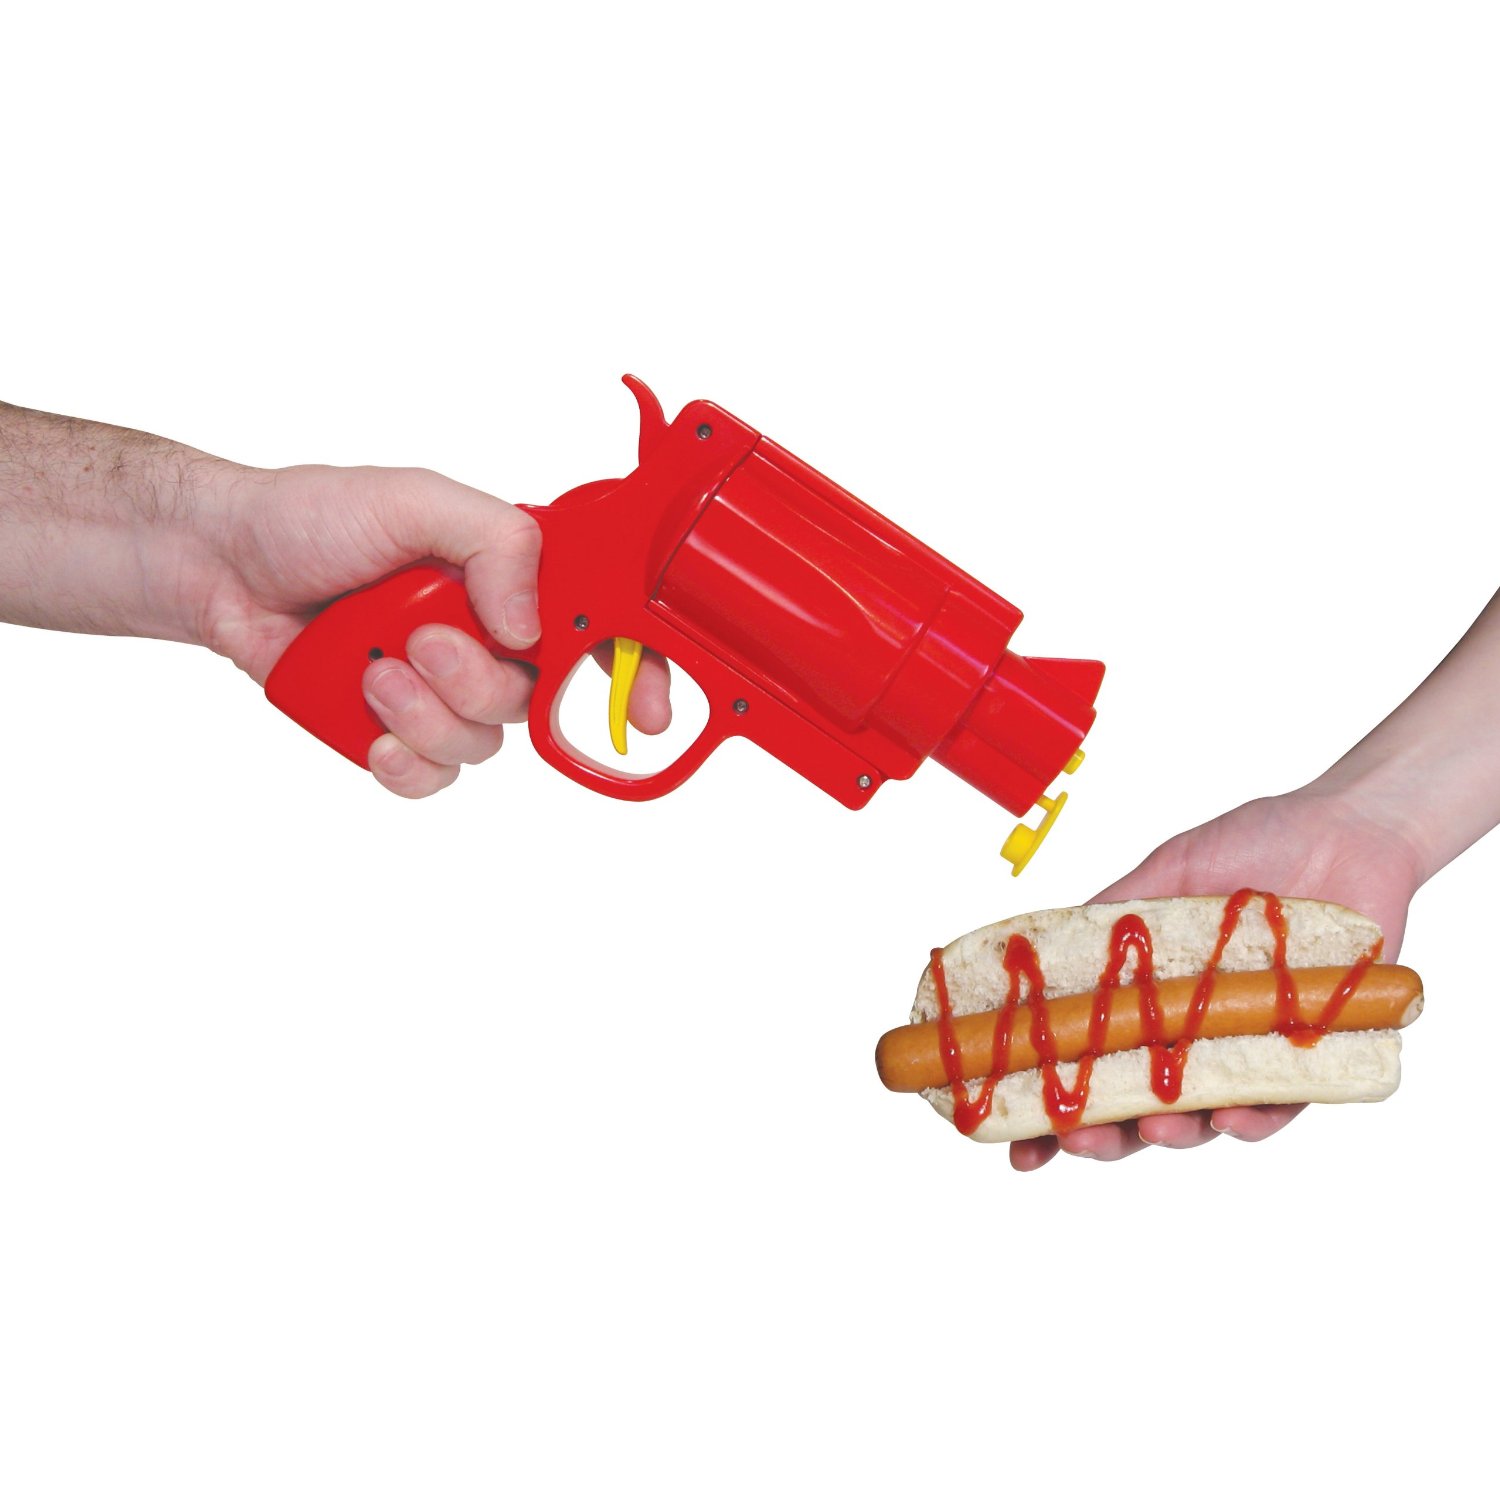 <a href="http://ebaum.it/ketgun" target="_blank">Ketchup Gun - $17.01</a>